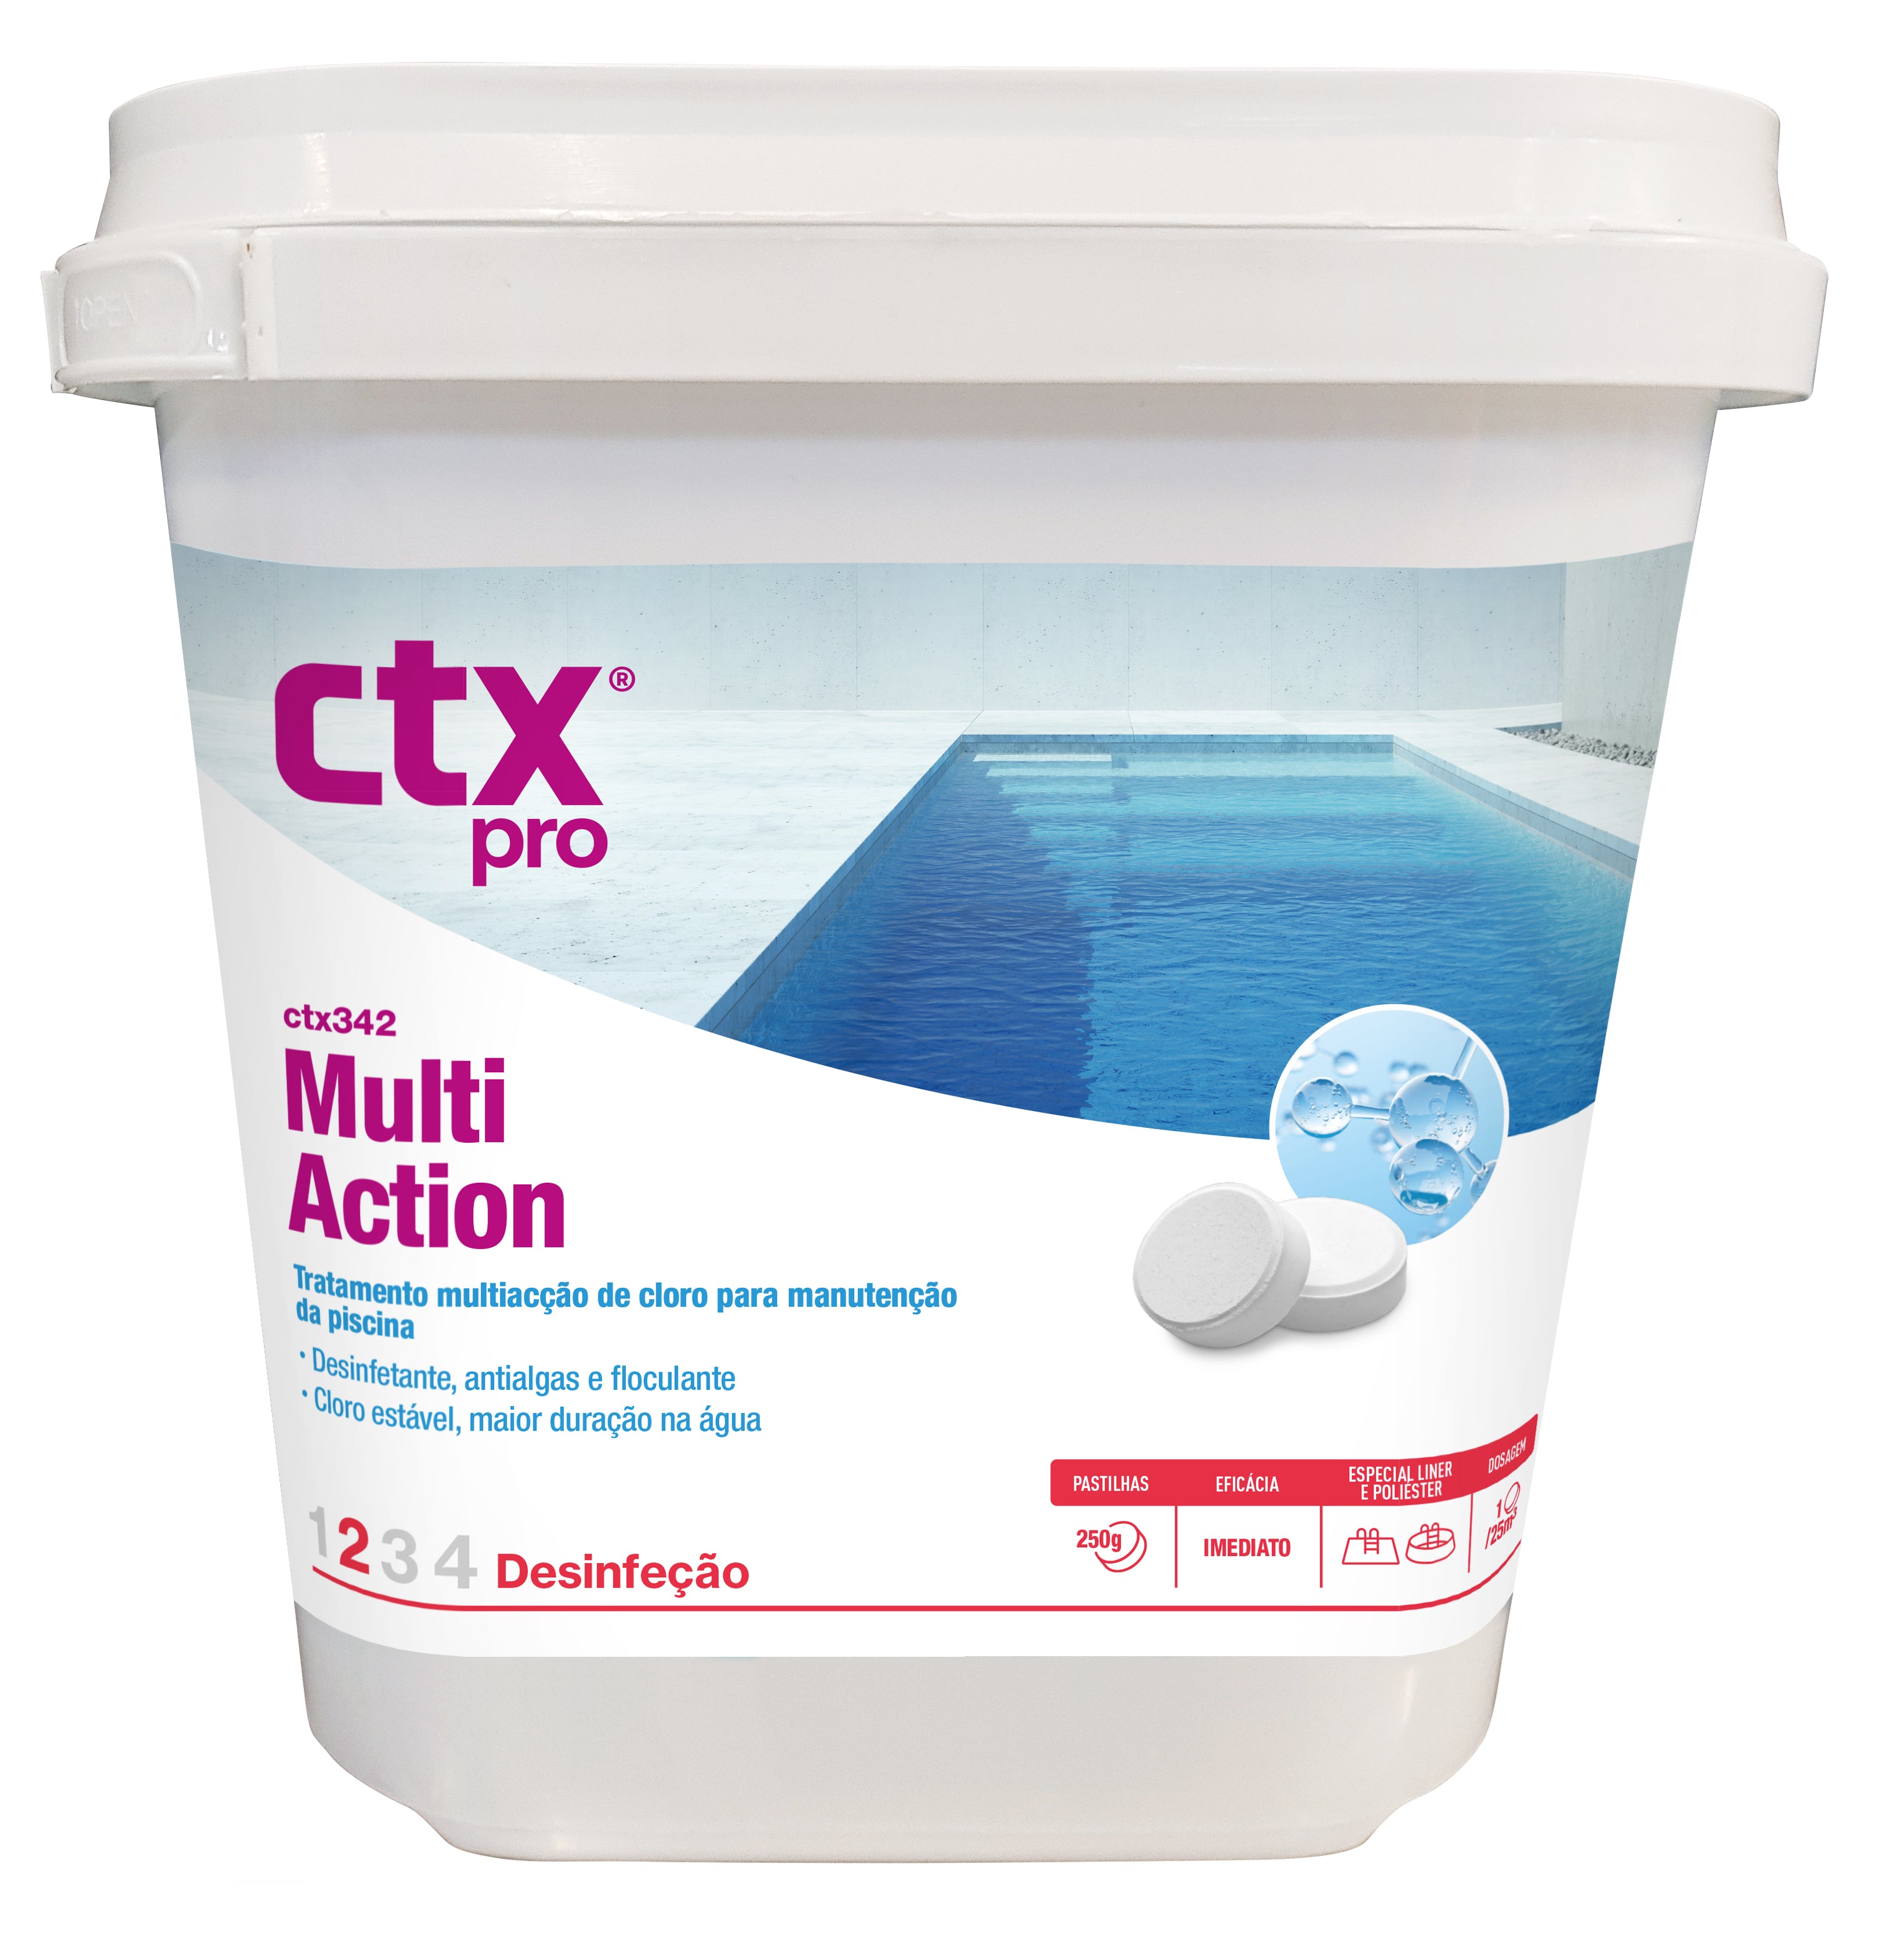 CTX-342 Multiacción tabletas 200gr (revestimiento especial y fibra de poliéster)